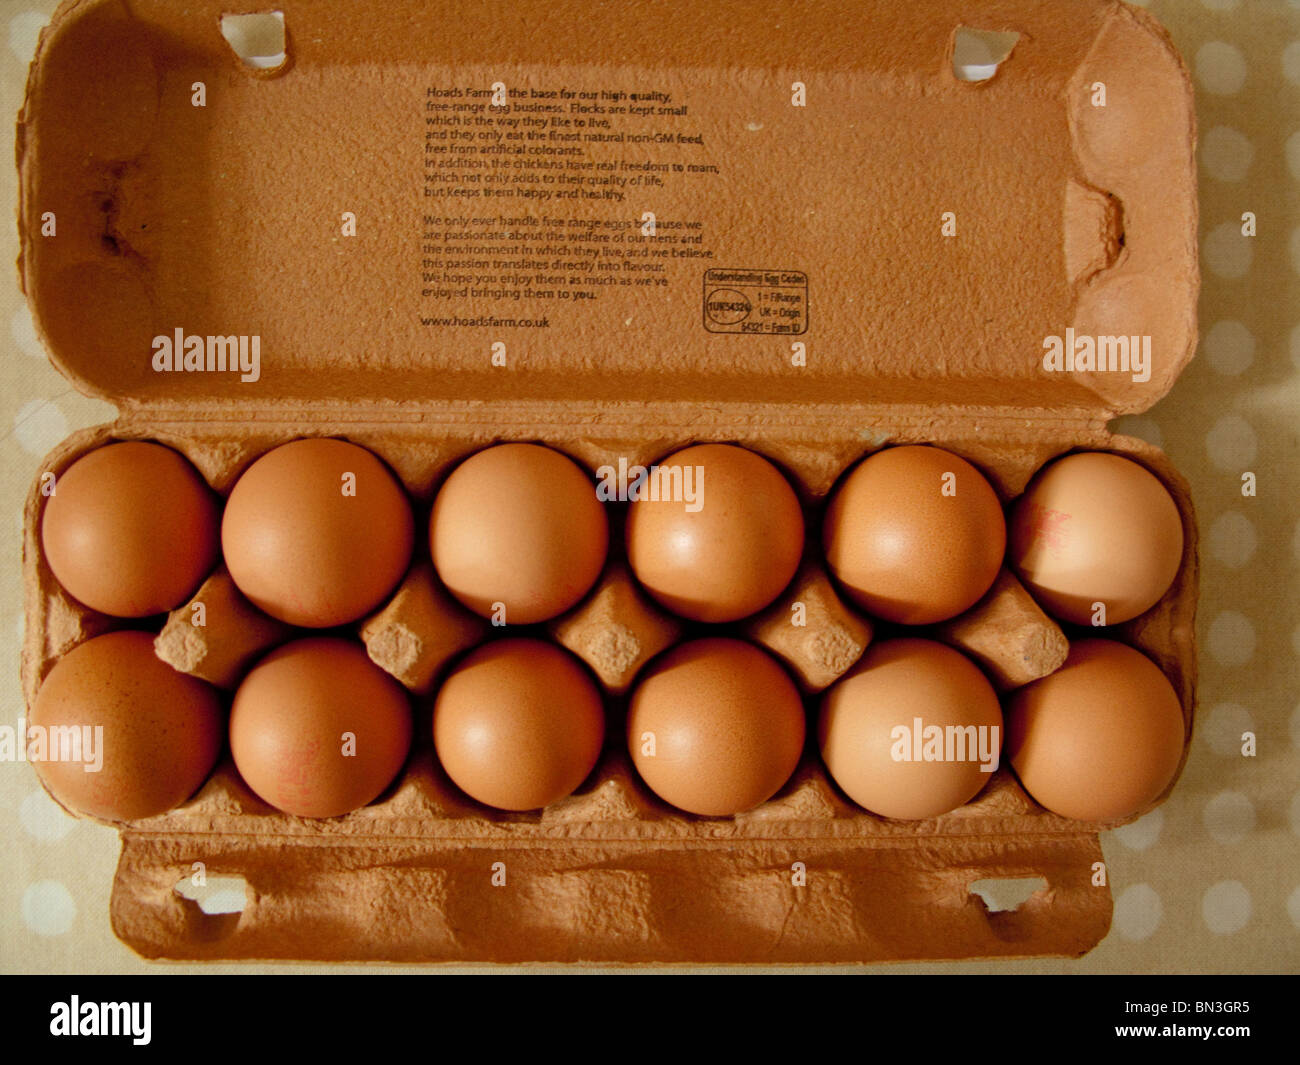 A dozen brown eggs in a carton on a kitchen table. Stock Photo